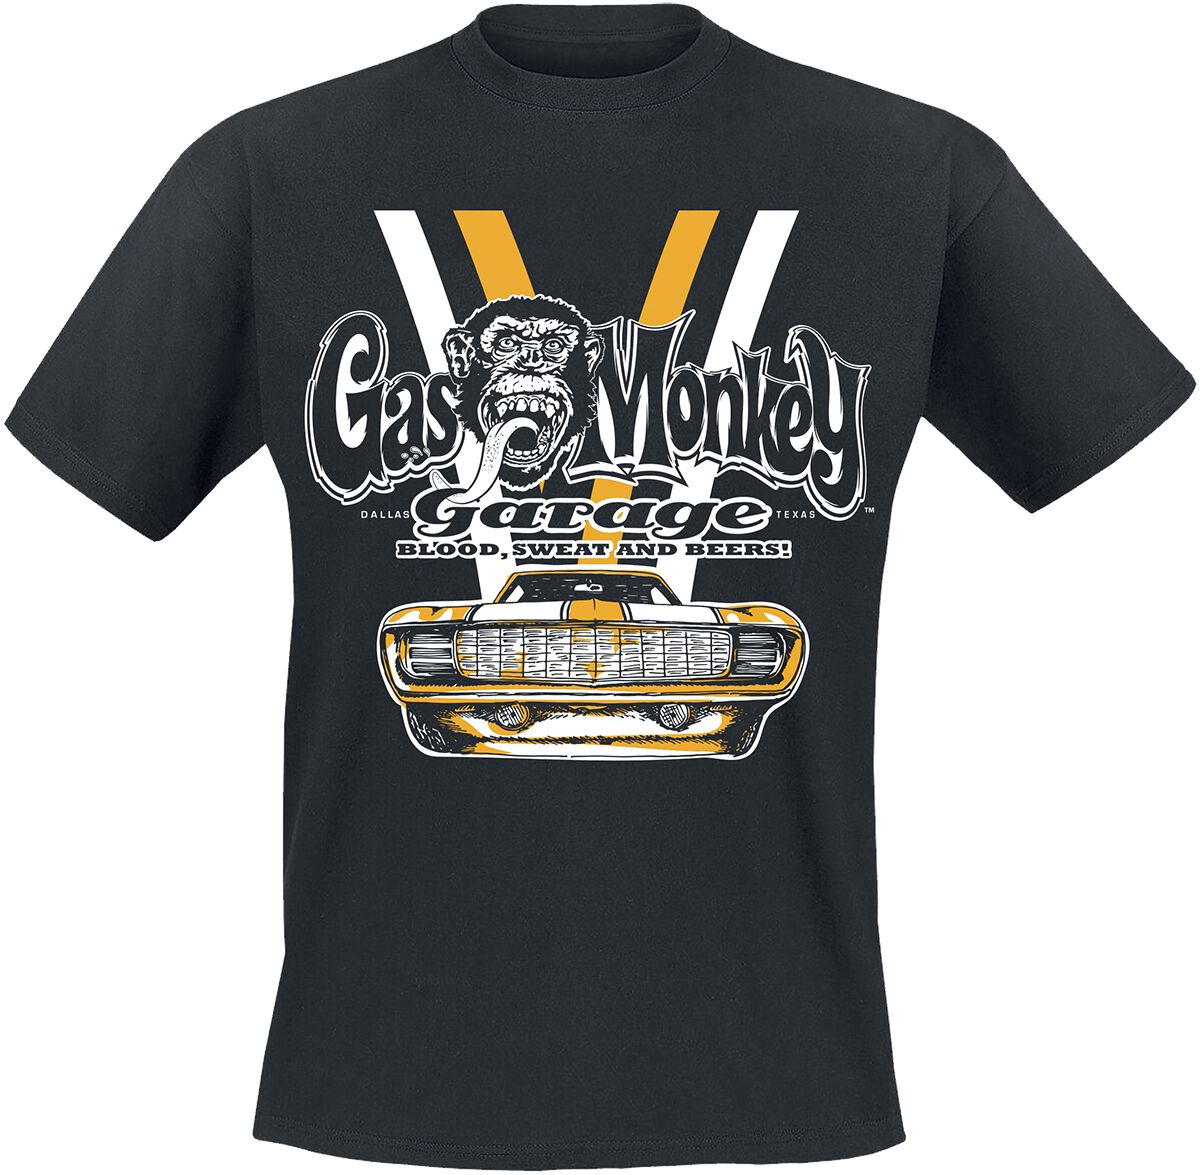 Gas Monkey Garage T-Shirt - Yellow And White Car - S bis XXL - für Männer - Größe S - schwarz  - Lizenzierter Fanartikel